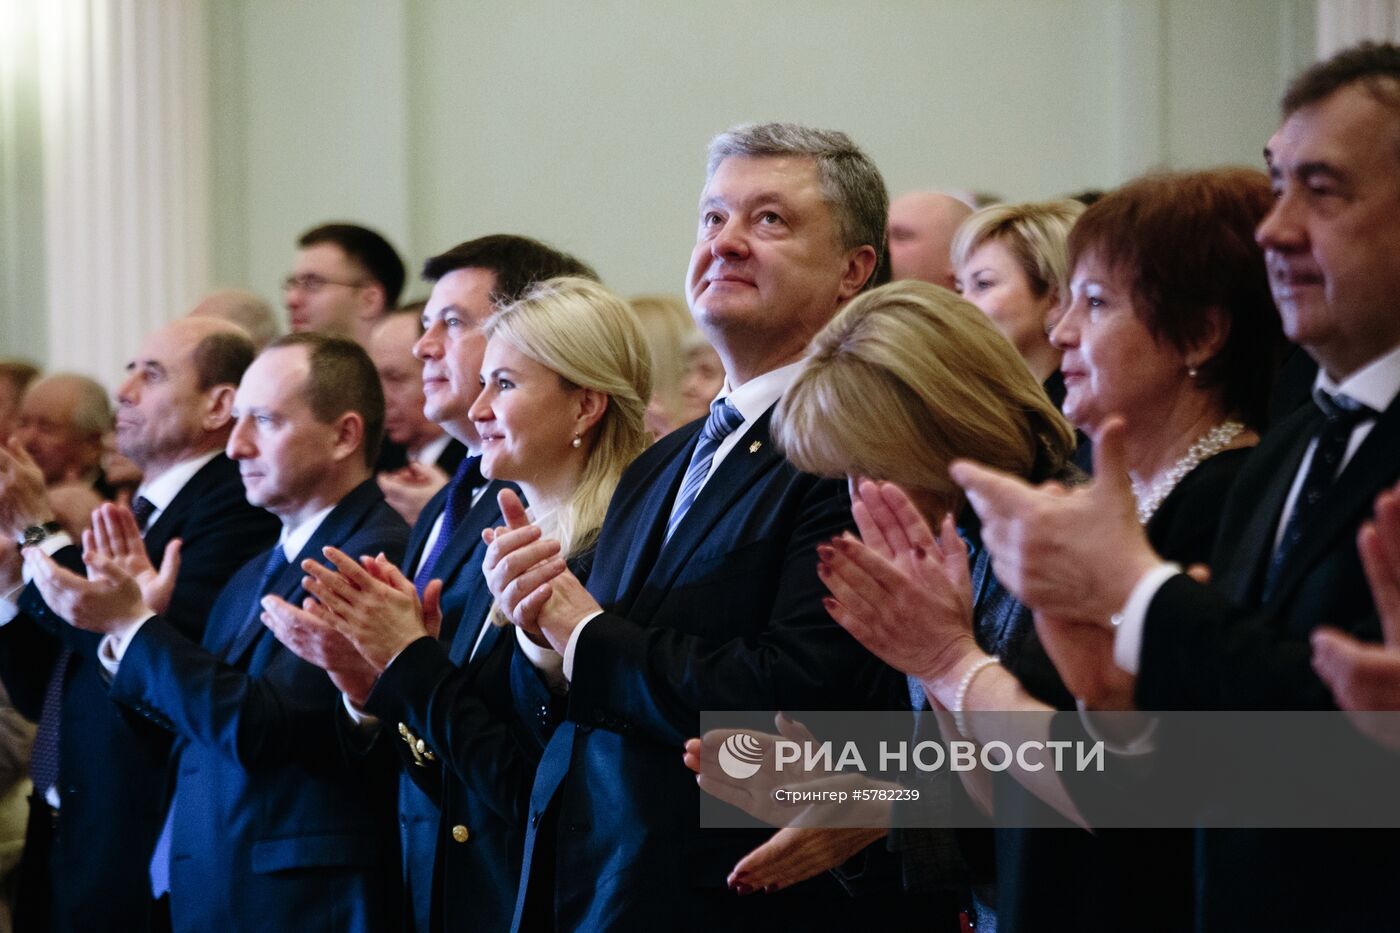 Харьковская областная филармония открылась после реконструкции